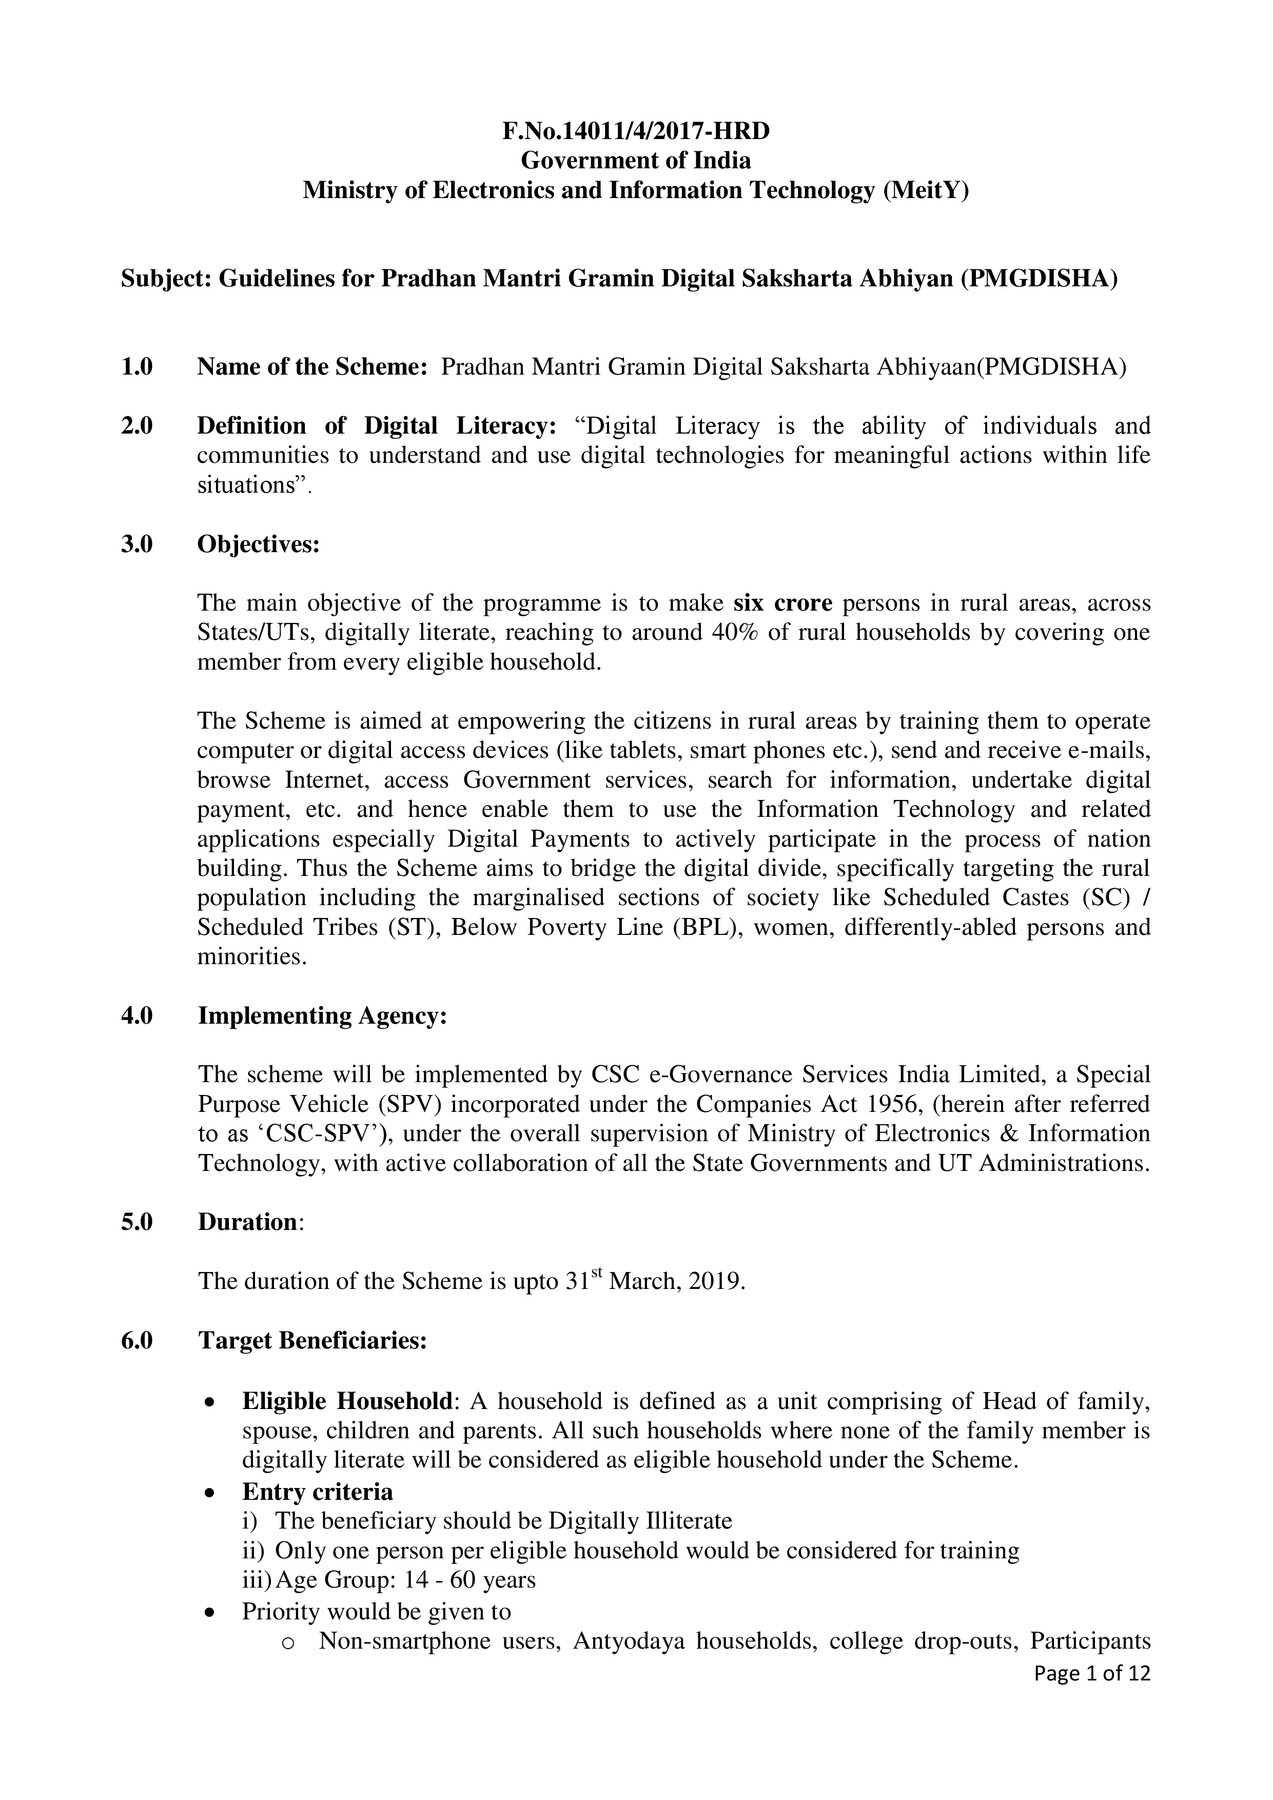 Pradhan Mantri Gramin Digital Saksharta Abhiyaan Guidelines PDF